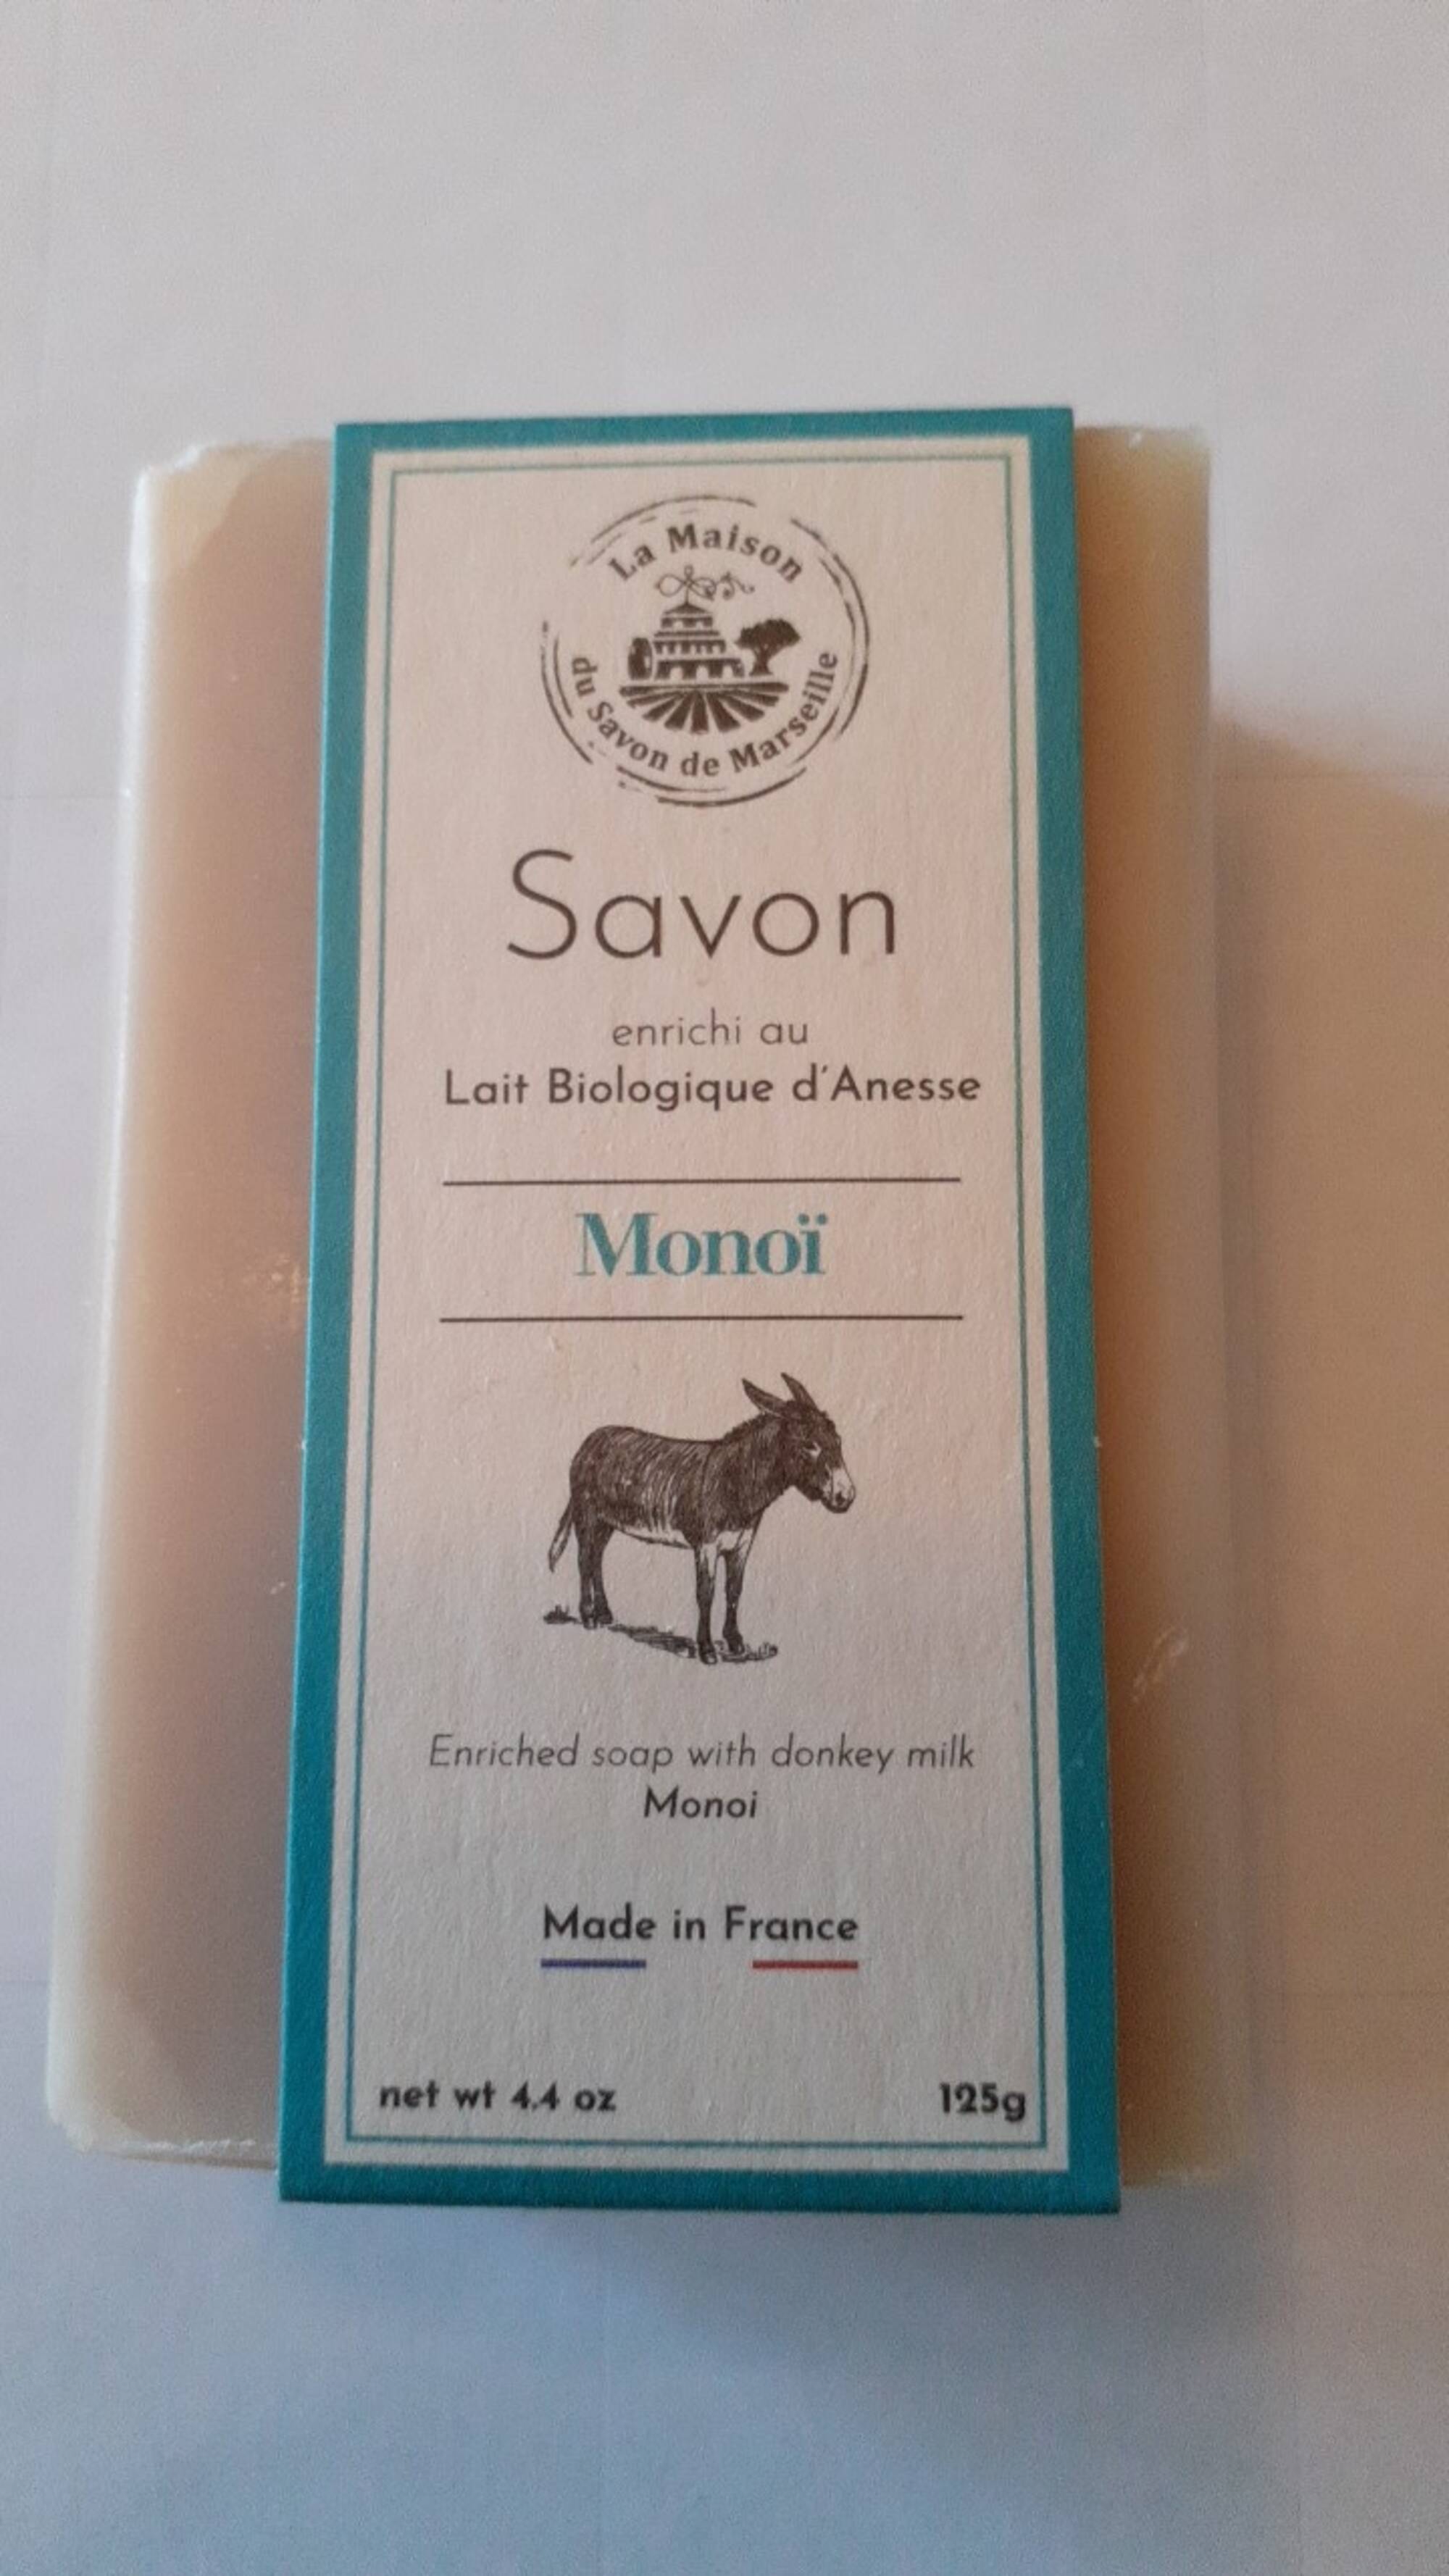 LA MAISON DU SAVON DE MARSEILLE - Monoï - Savon enrichi au lait biologique d'ânesse